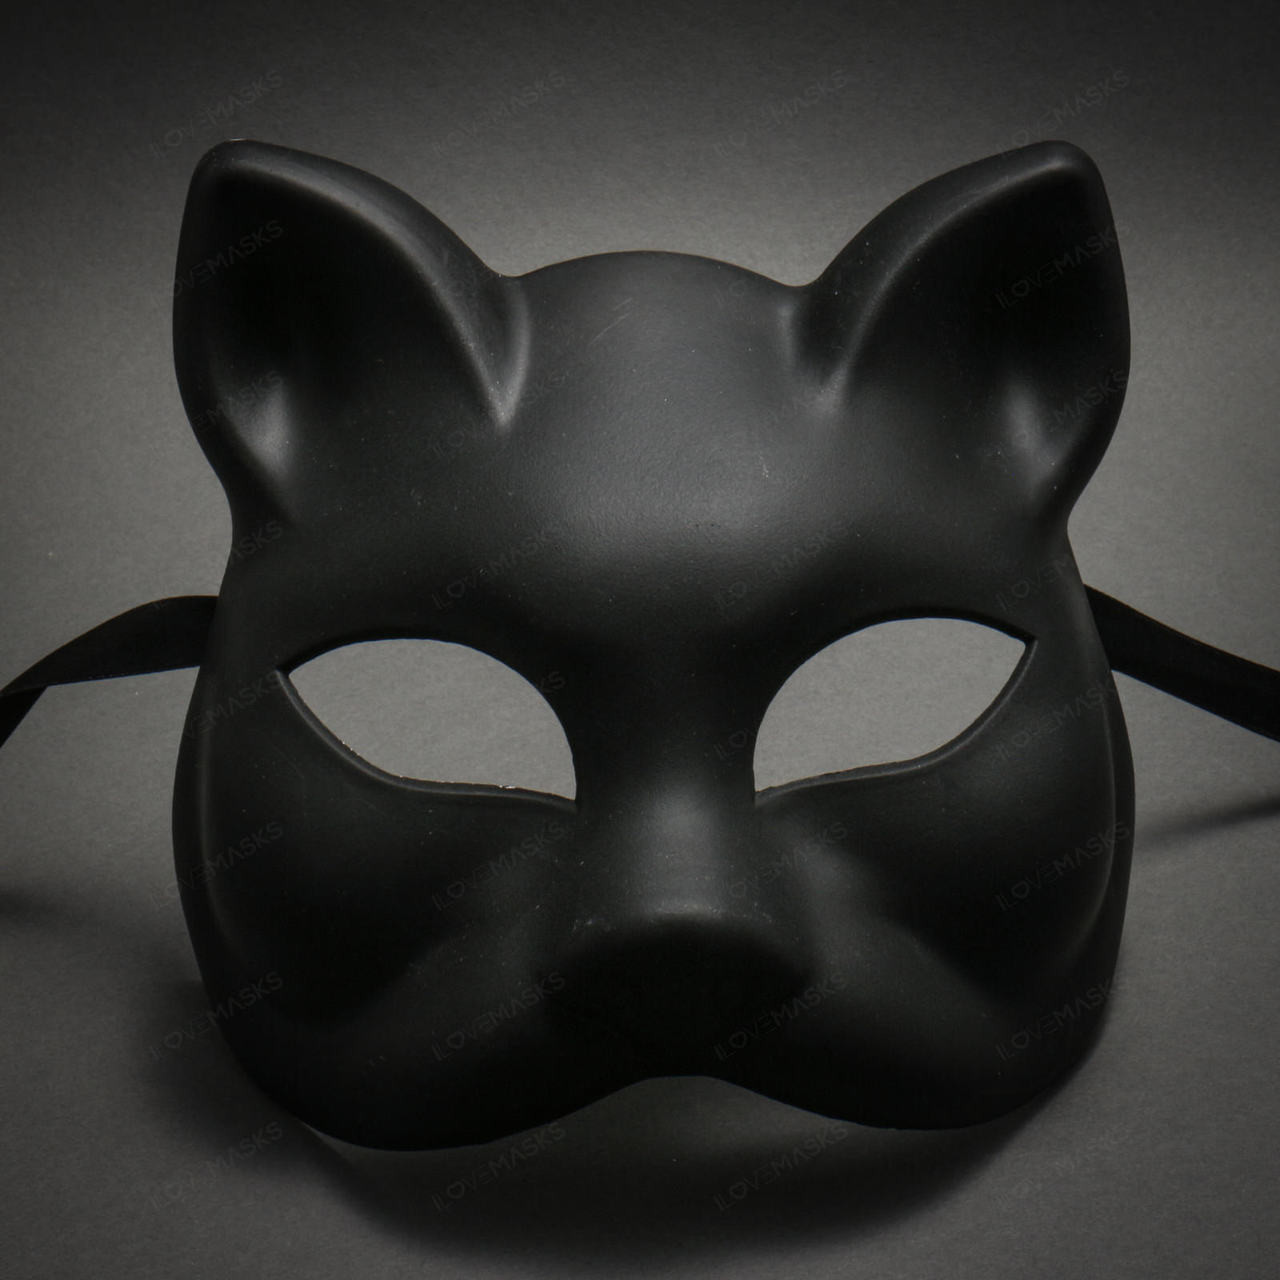 Venetian Gatto (Cat) white mask